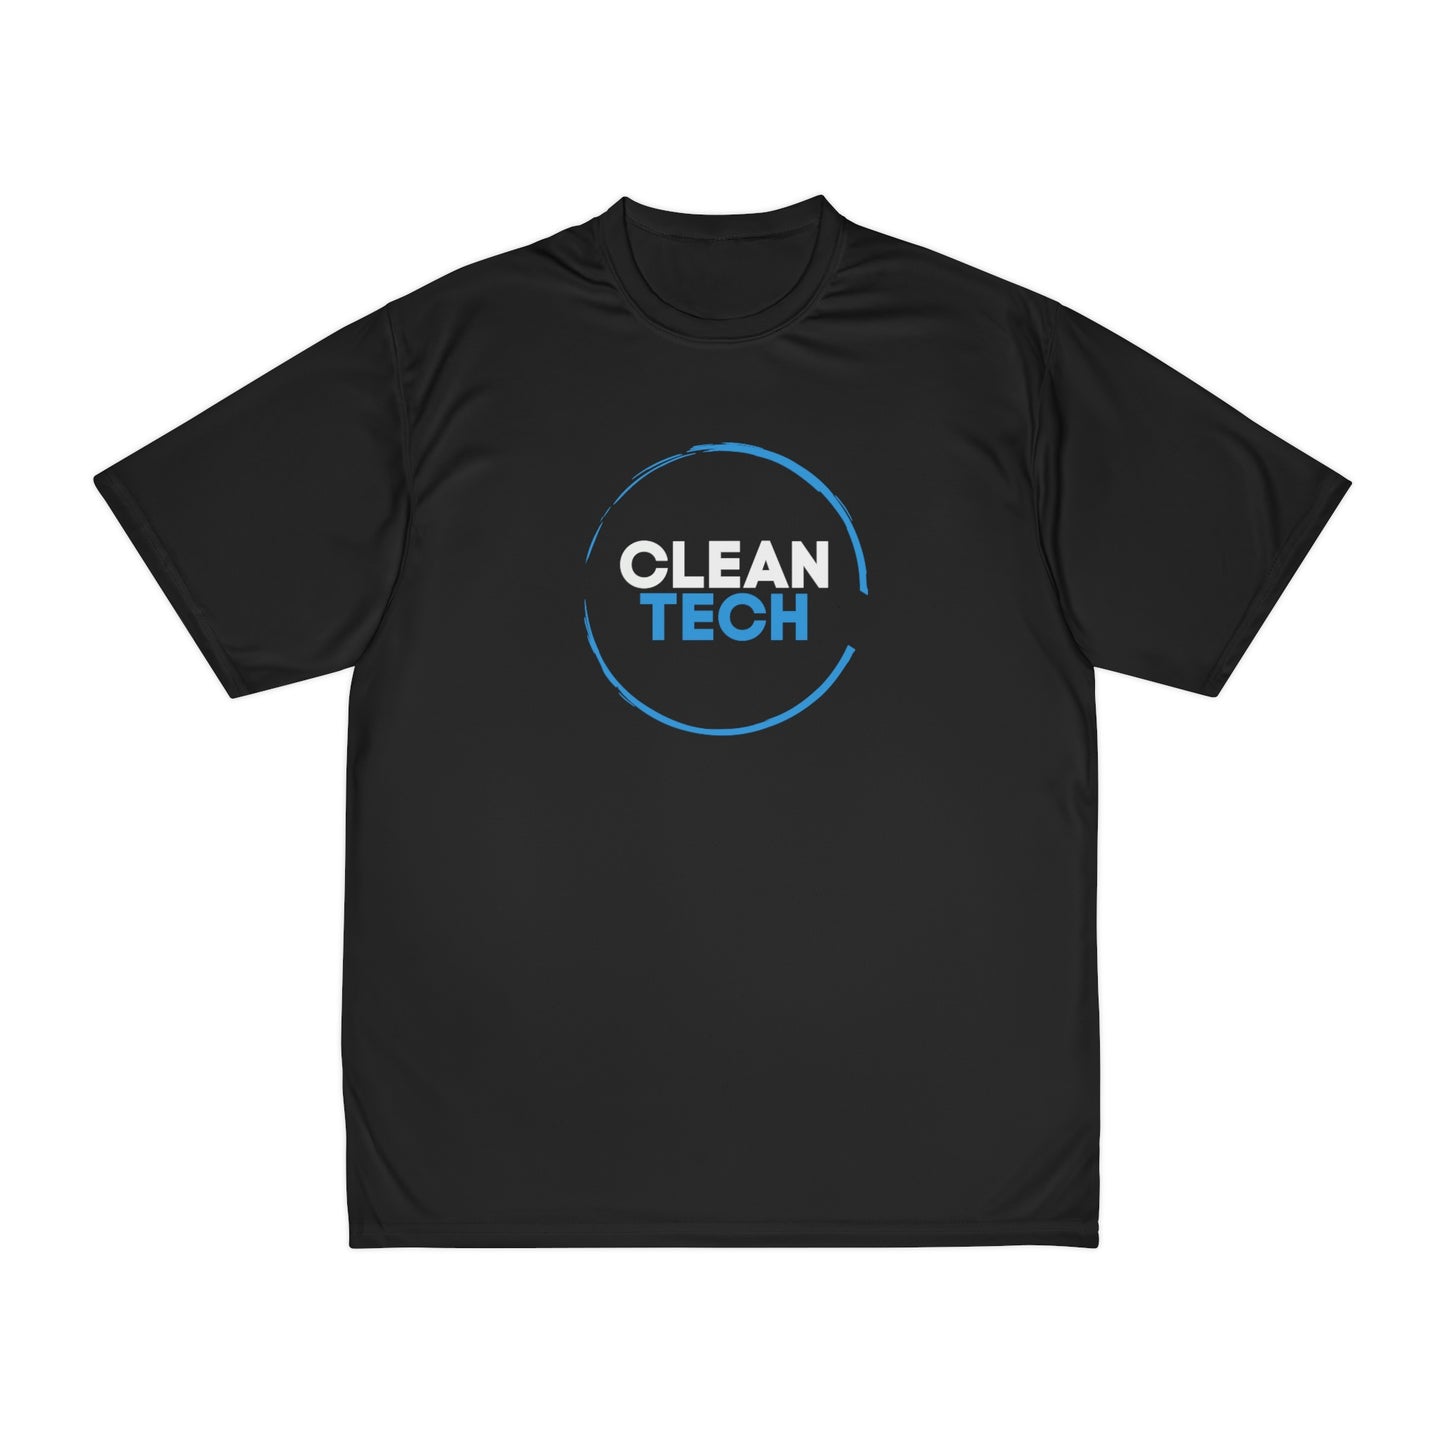 CLEANTECH - Men's Performance T-Shirt